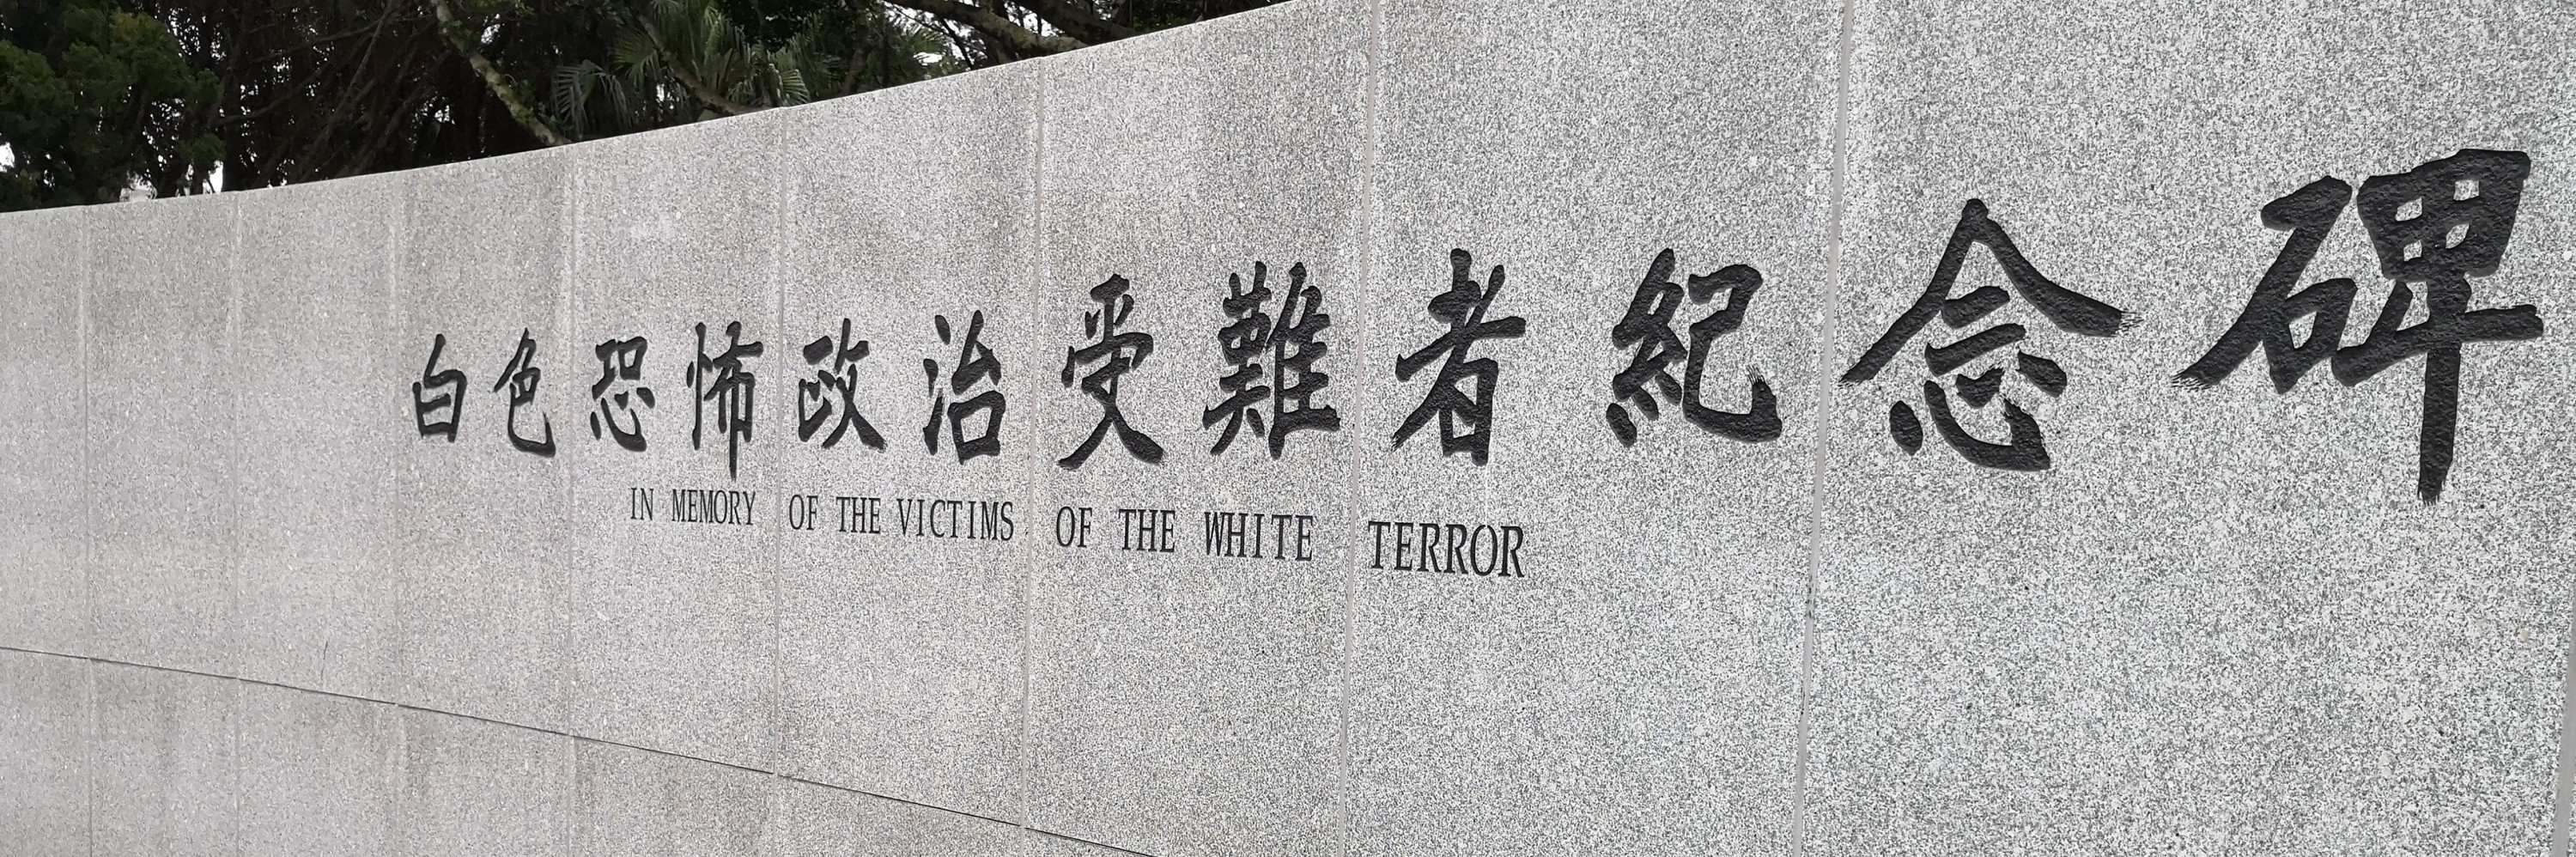 白色恐怖政治受难者纪念碑,台湾自助游攻略 - 马蜂窝